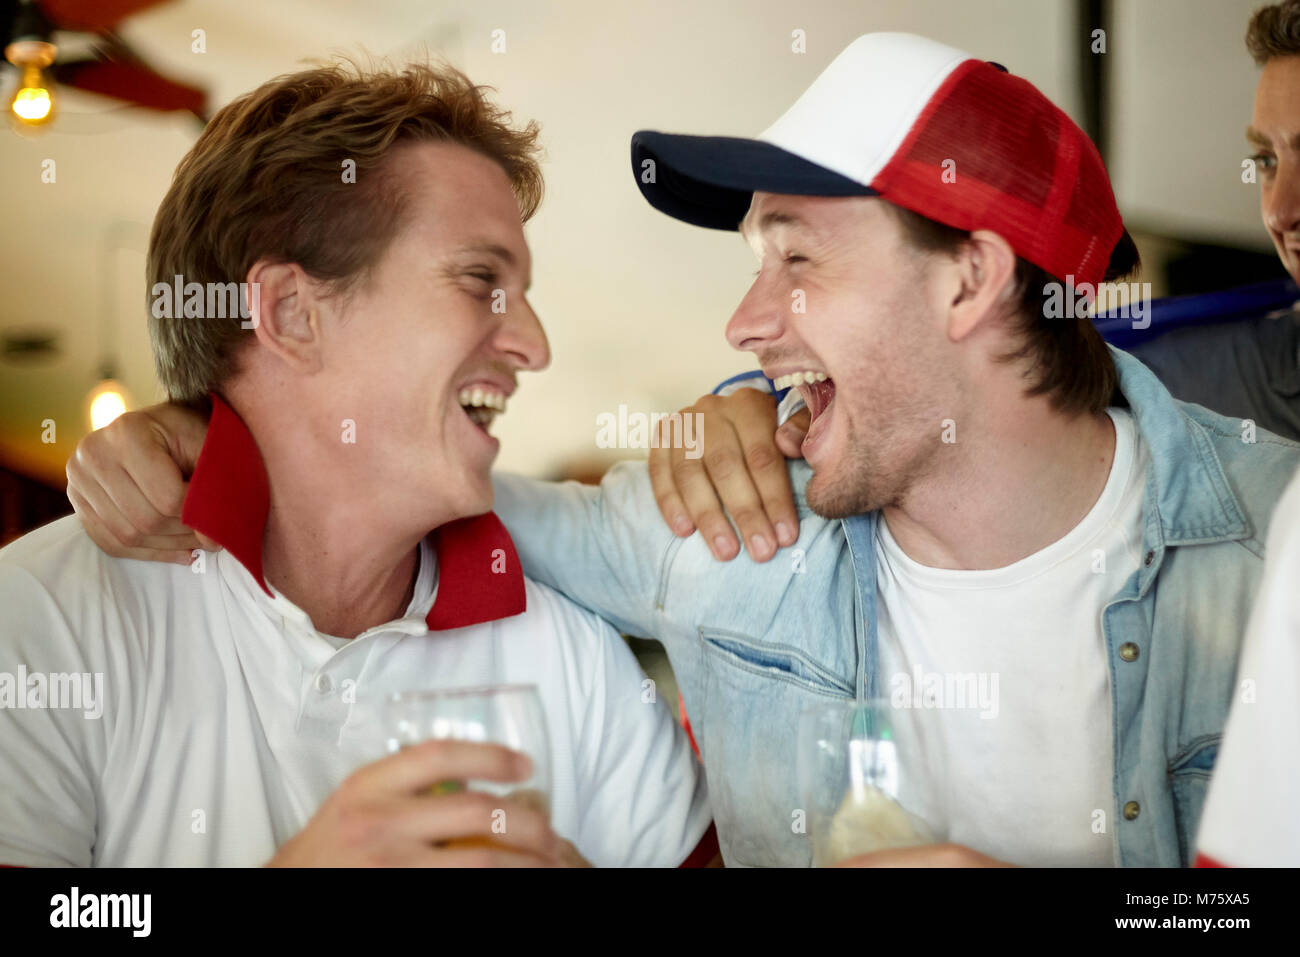 Los entusiastas de los deportes celebrando juntos en bares Foto de stock